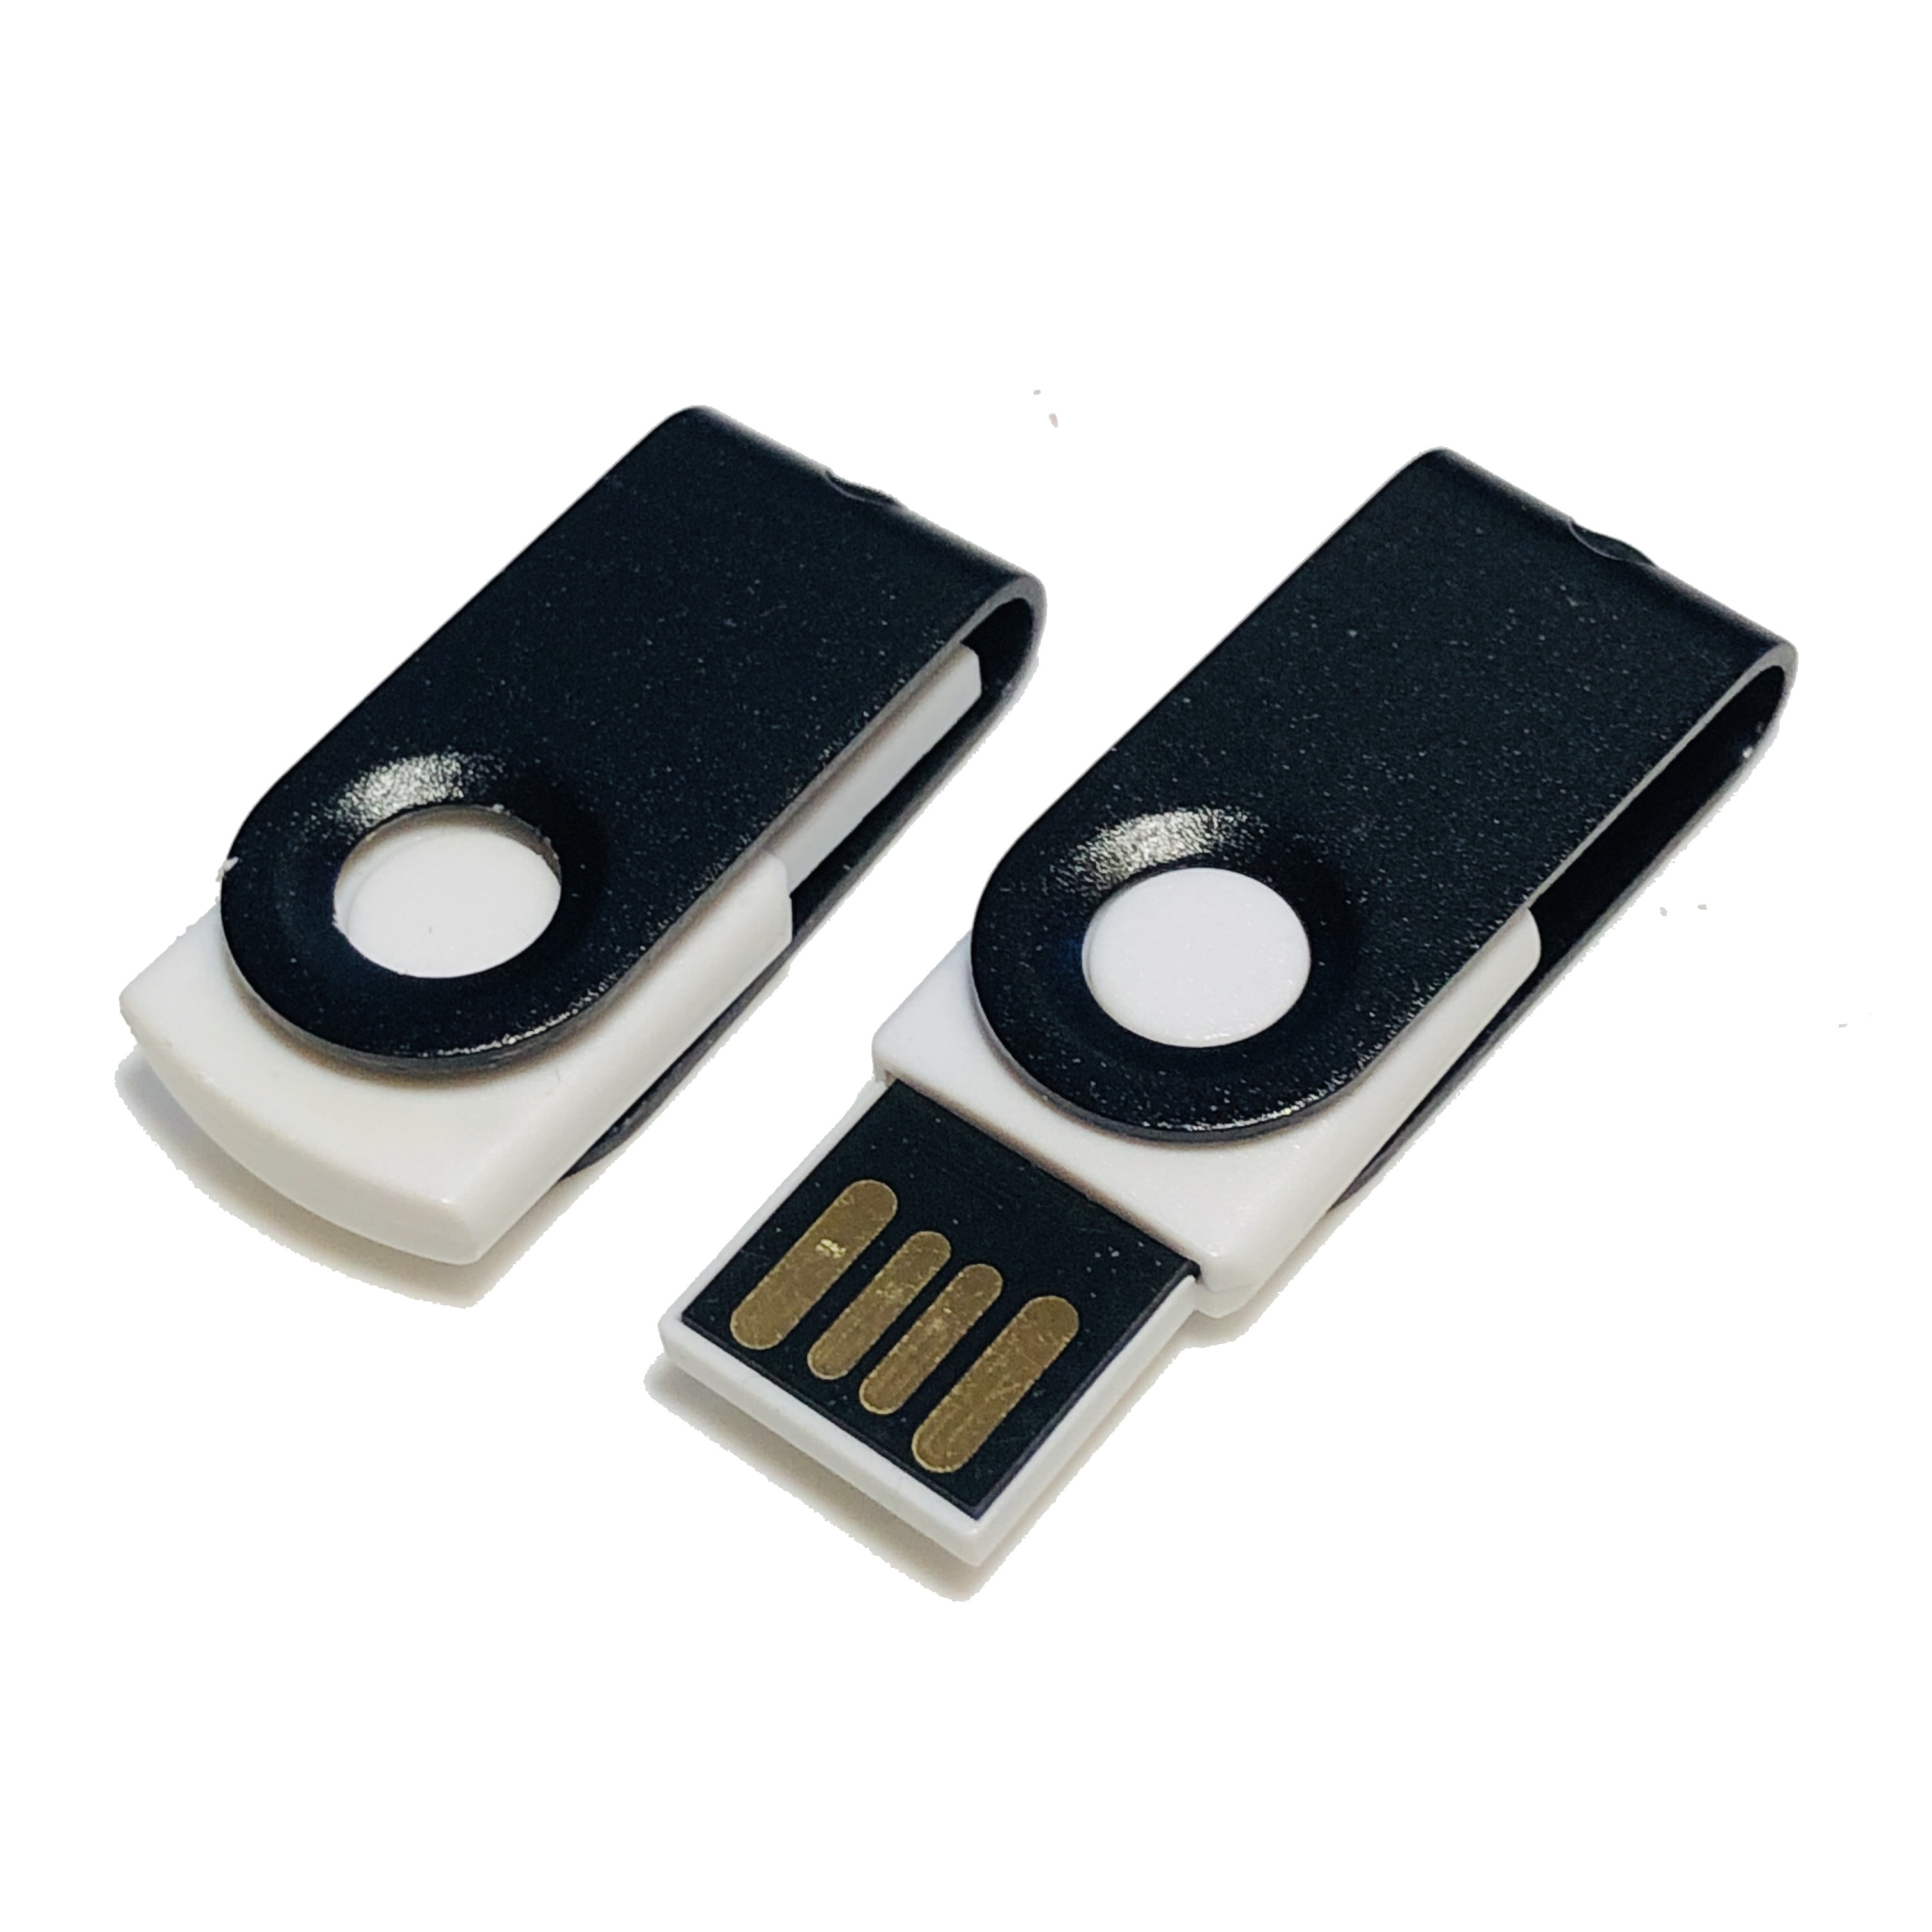 USB GERMANY ® GB) USB-Stick (Weiß-Schwarz, 1 MINI-SWIVEL